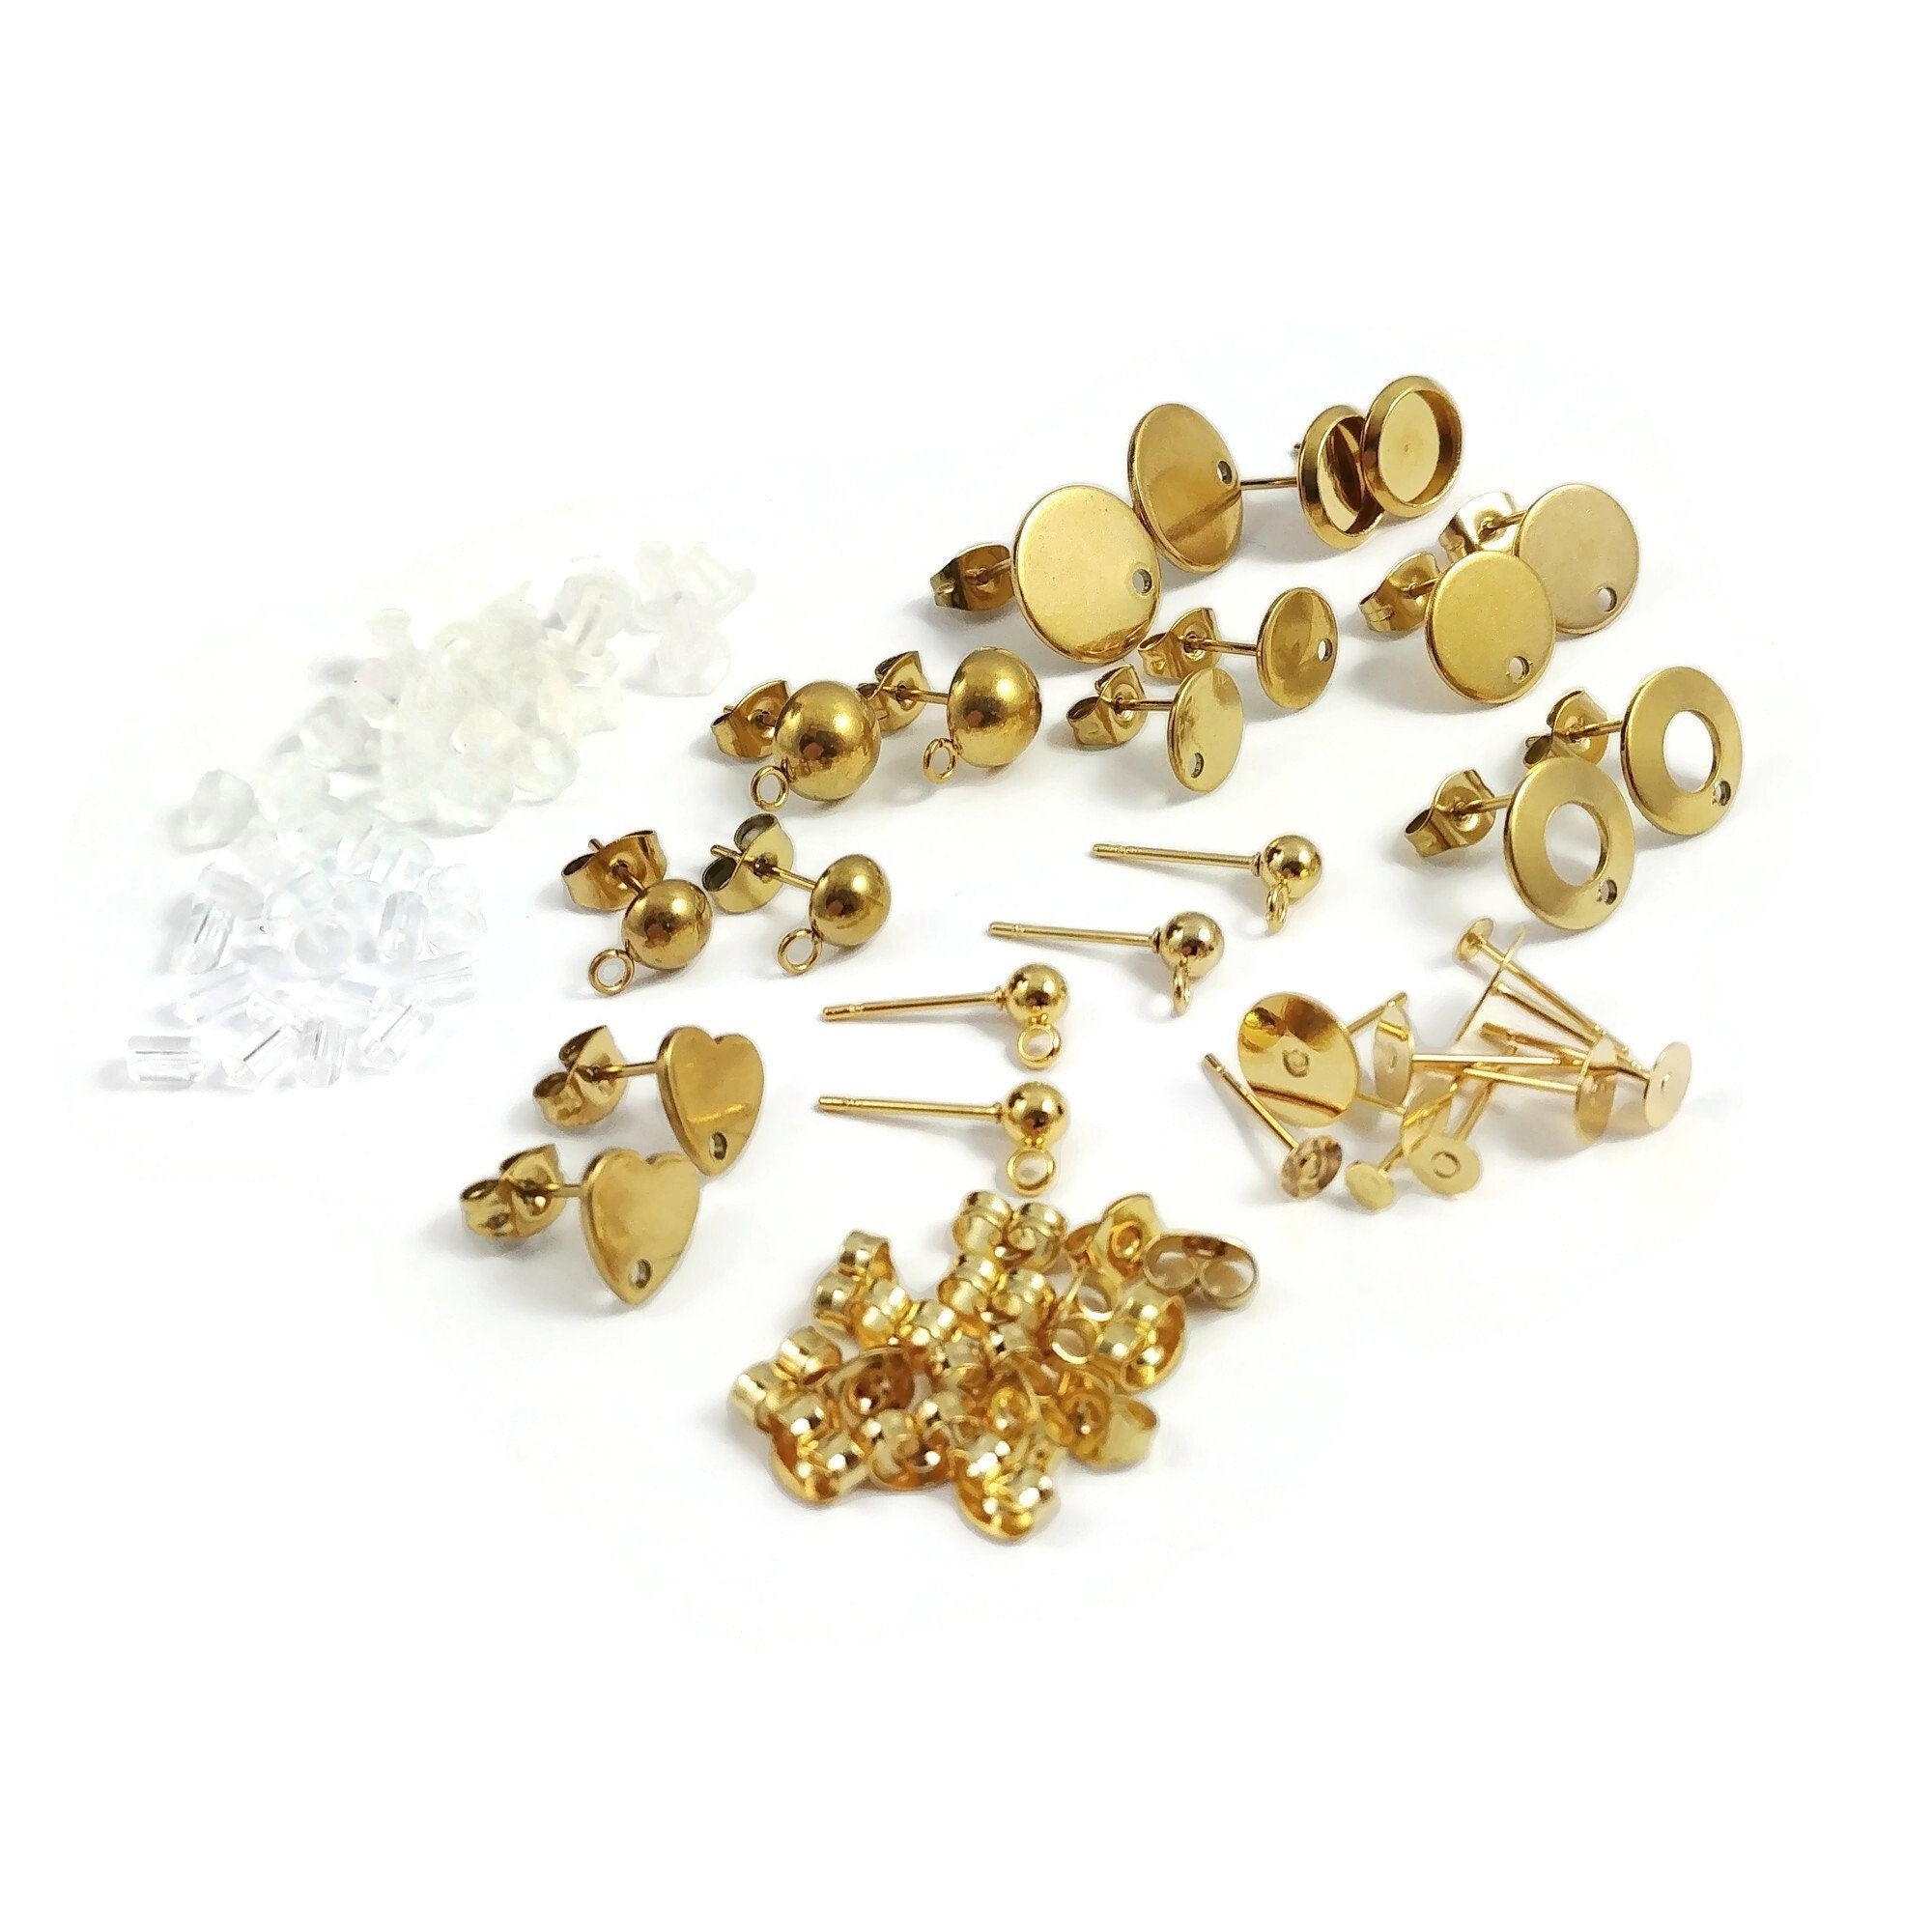 Earring making starter kit, Gold stainless steel posts, 50pcs sample p